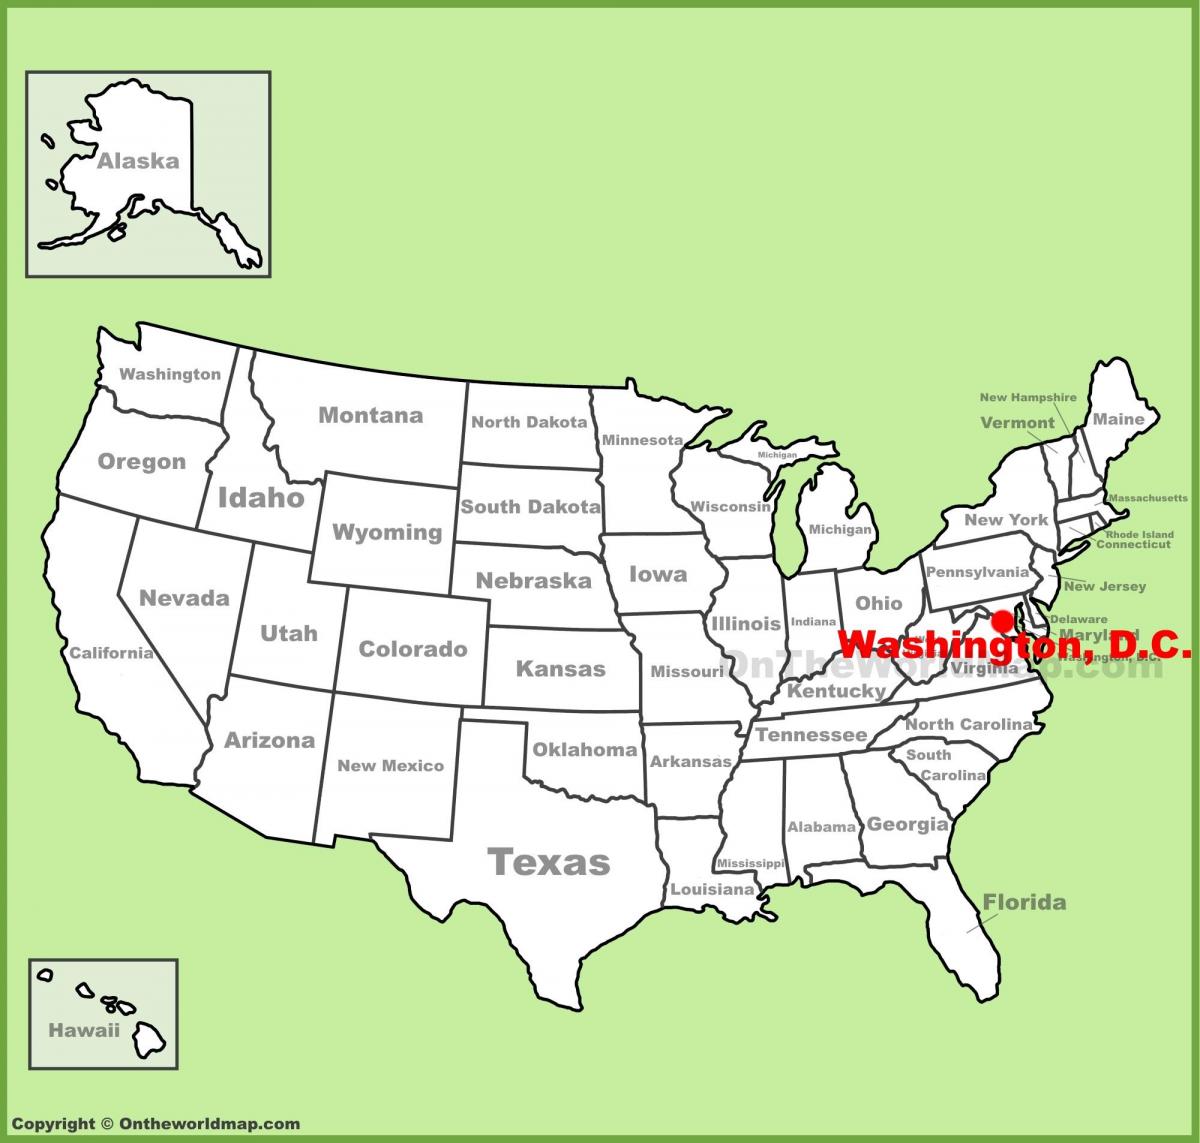 Вашингтон, округ Колумбия на карте Америки